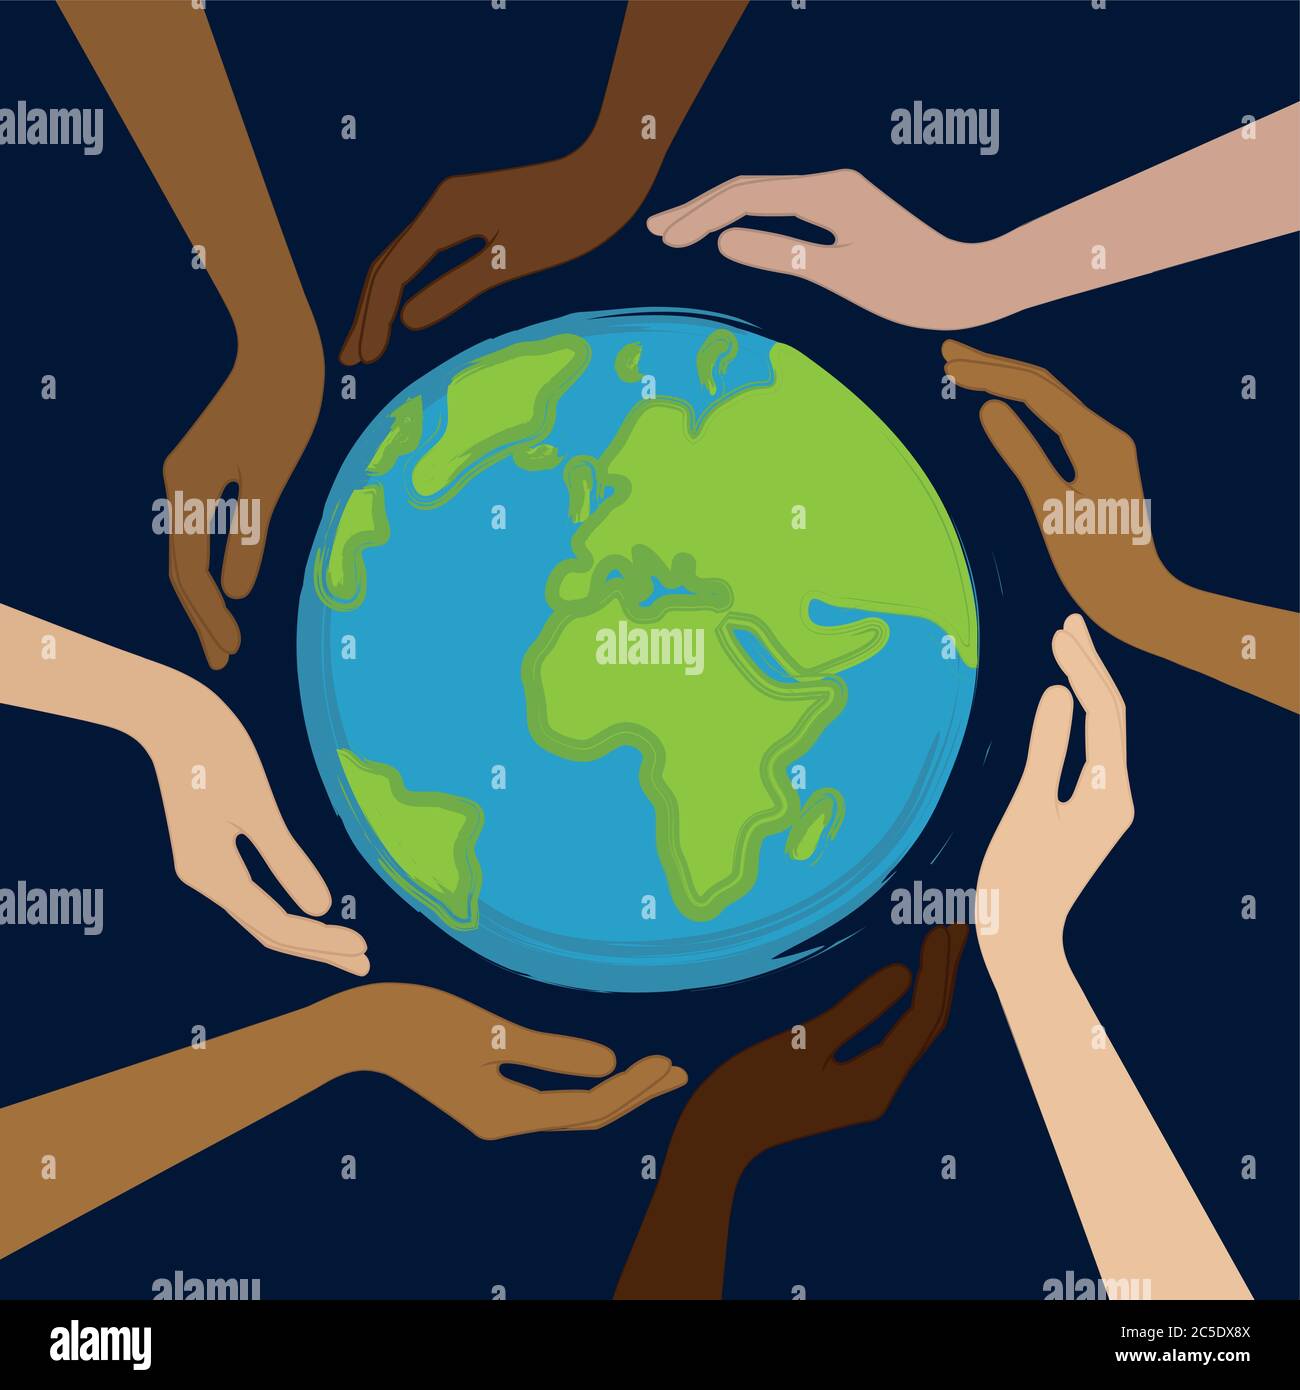 Der Planet Erde in der Mitte der Hände mit unterschiedlichen Hautfarben Vektor-illustration EPS 10. Stock Vektor